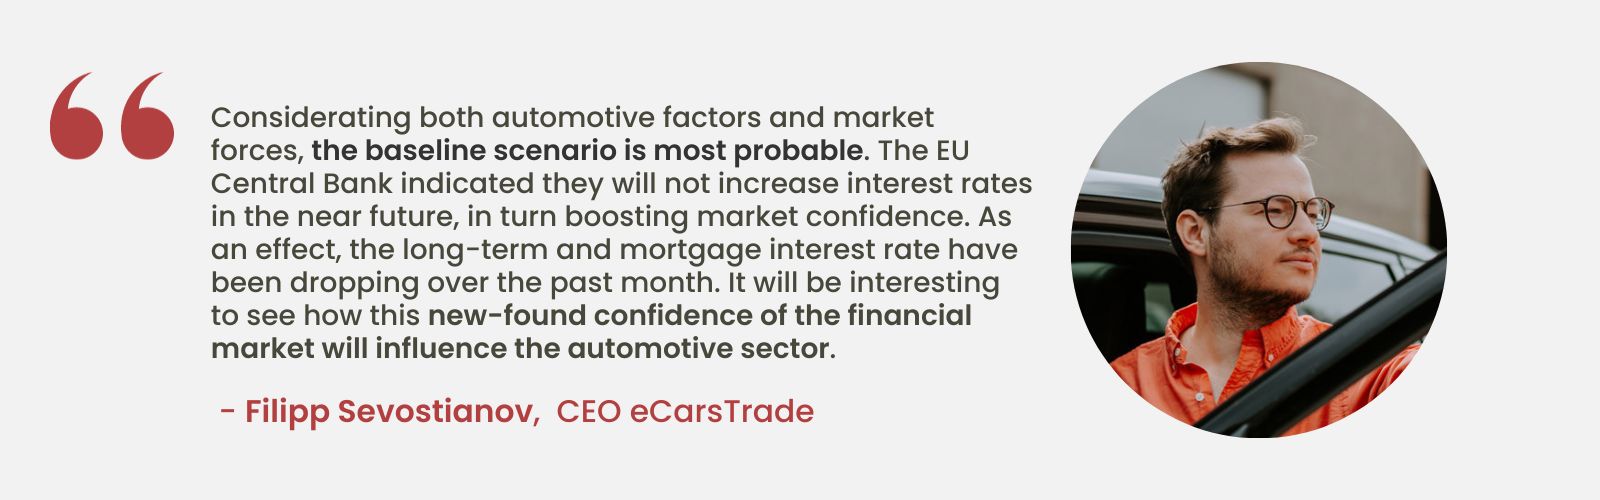 Экспертный анализ Филиппа Севостьянова, генерального директора eCarsTrade, обсуждает влияние стабильных процентных ставок ЕС на доверие рынка и потенциальное влияние на автомобильную промышленность.